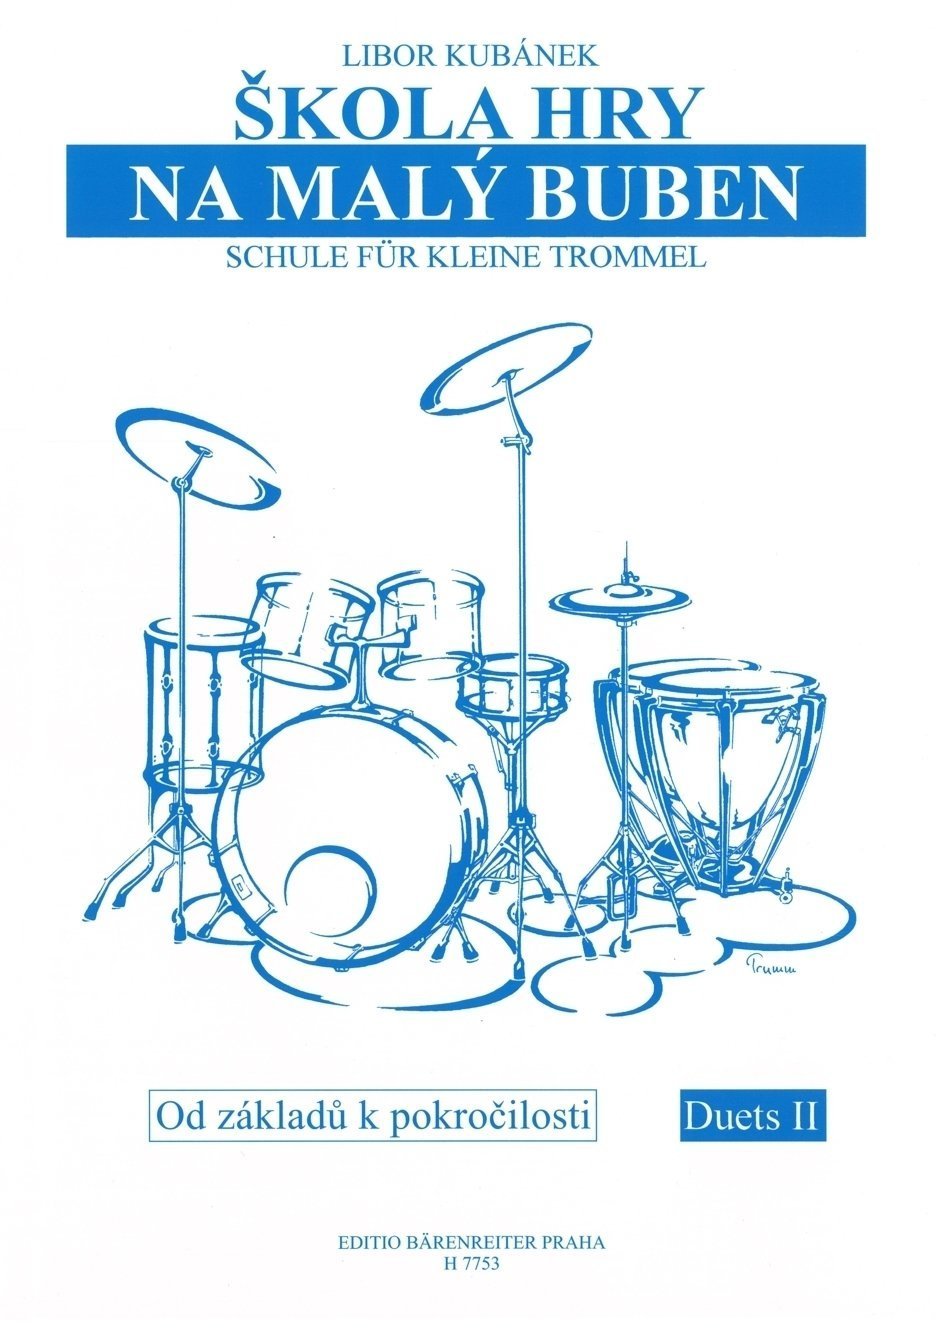 Partitura para bateria e percussão Libor Kubánek Škola hry na malý buben Livro de música